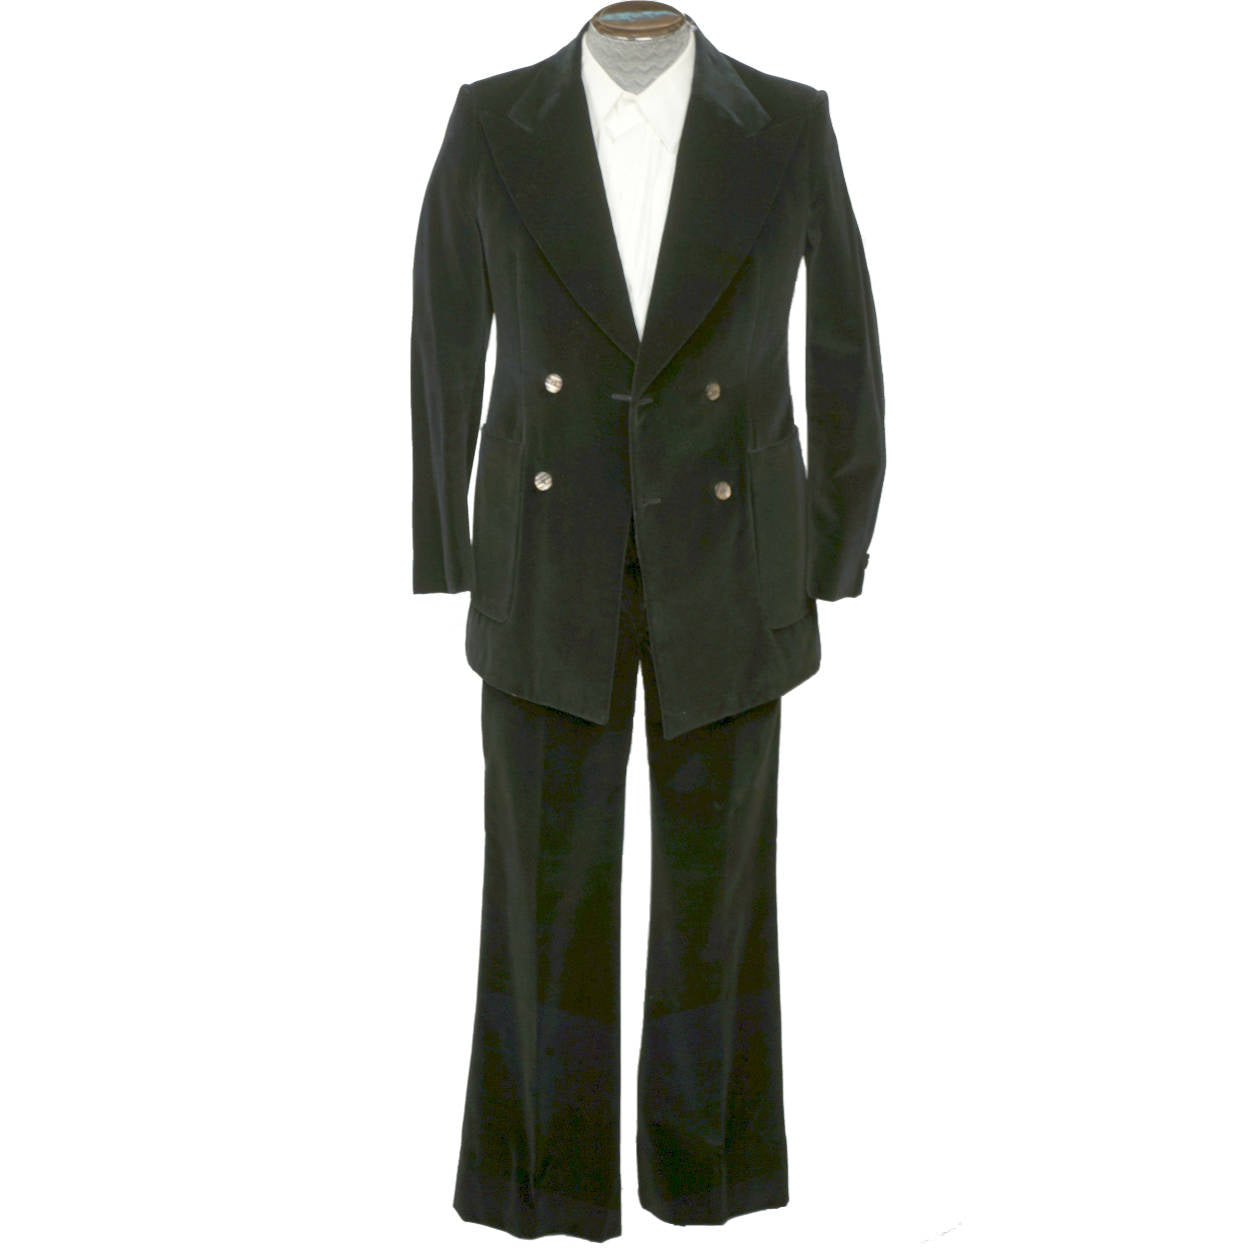 https://www.poppysvintageclothing.com/cdn/shop/products/John-Warden-1970s-Black-Velvet-Suit.jpg?v=1594446806